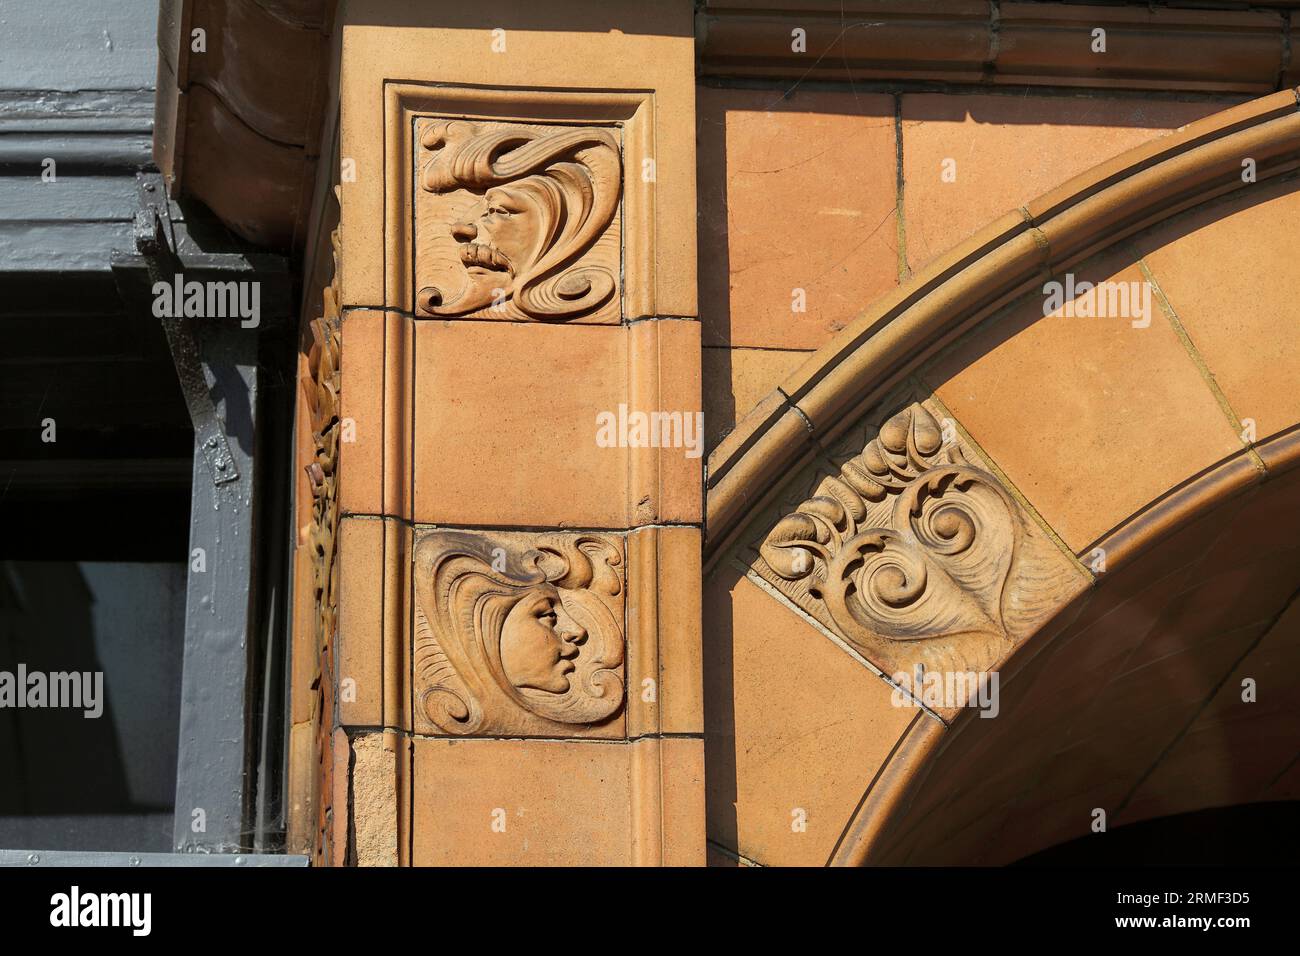 Primo piano dei dettagli sulla facciata del grande Ippodromo di Yarmouth che mostra piastrelle in terracotta con disegni art nouveau. Foto Stock